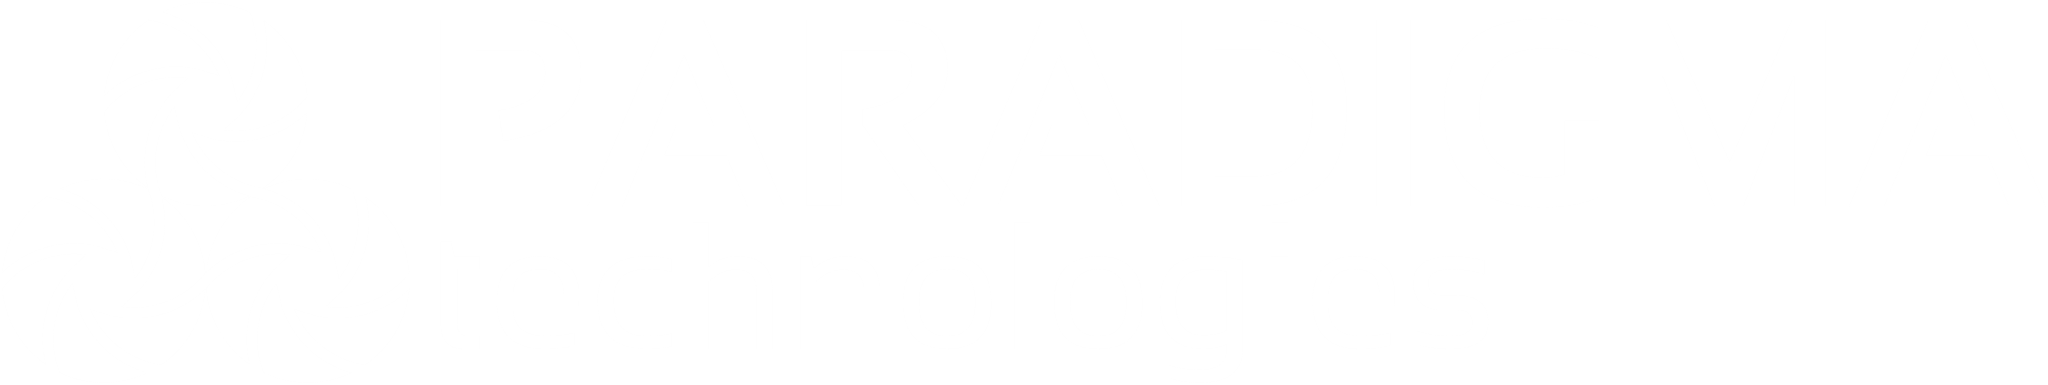 logo-paradigma-technologies-complete-white-nobg-2048px